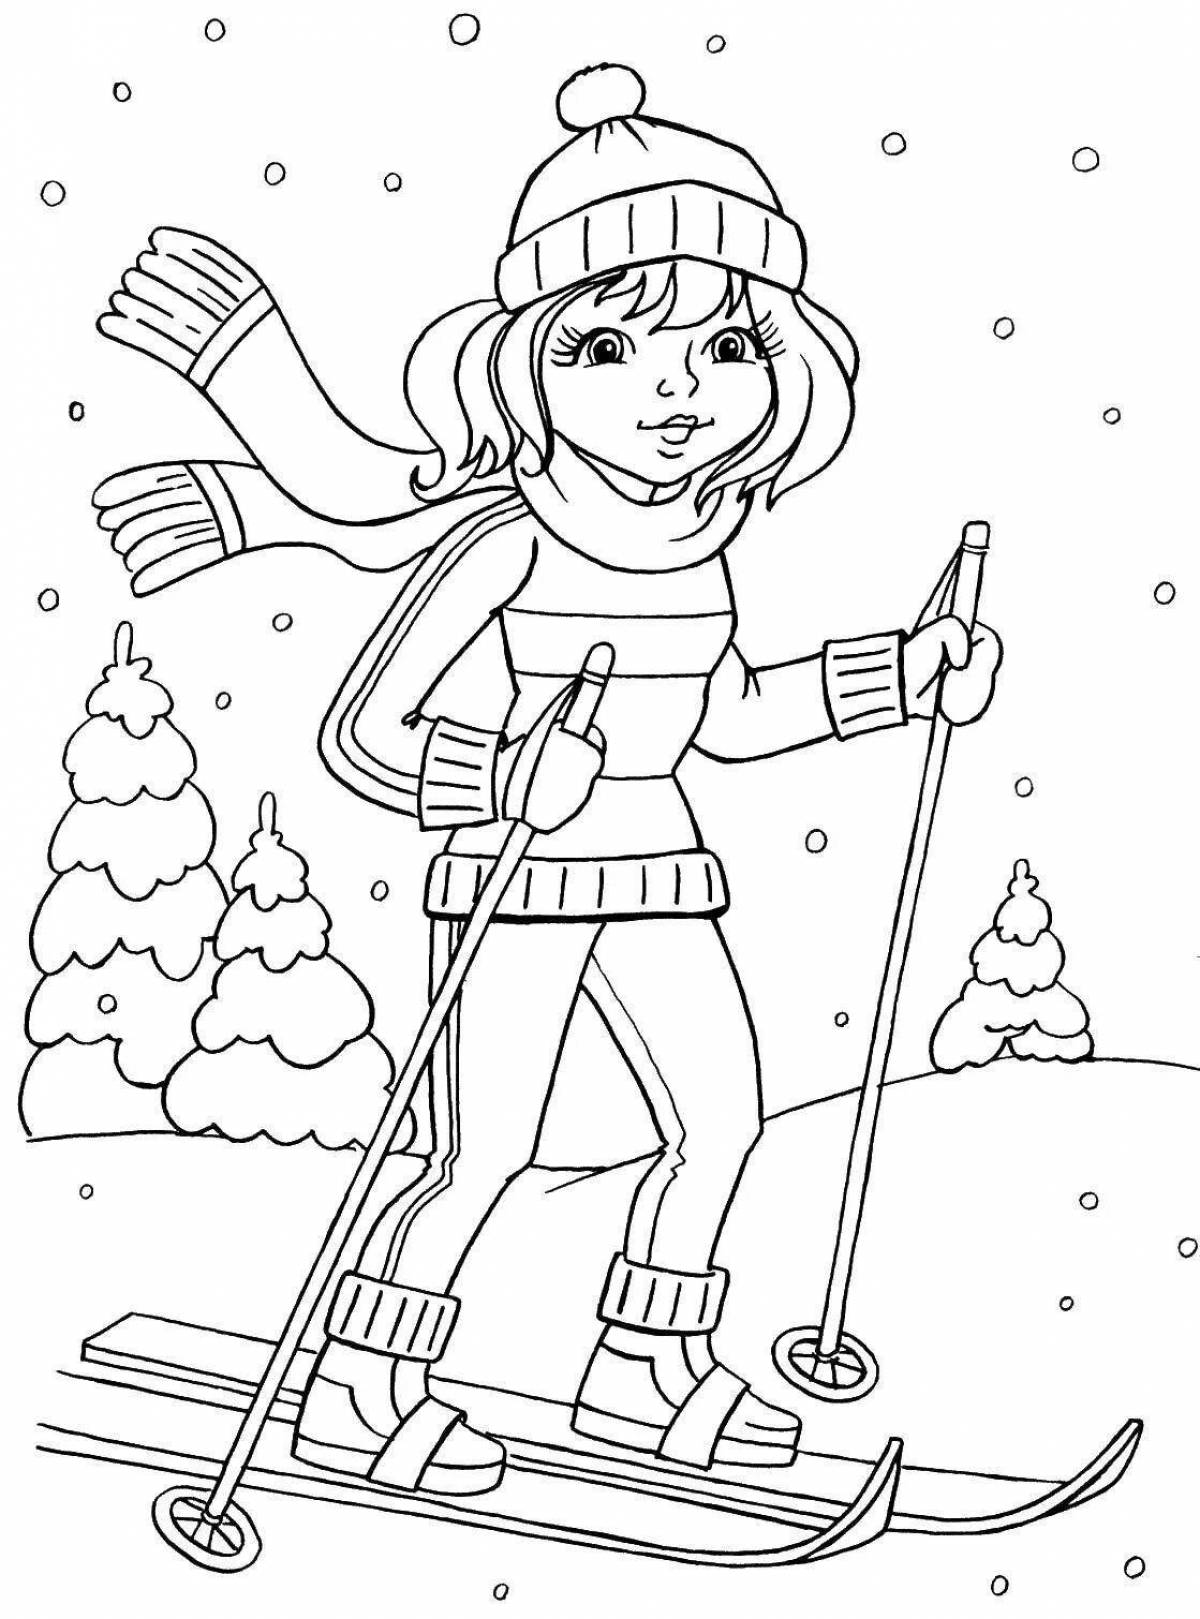 Children skiing in winter #4